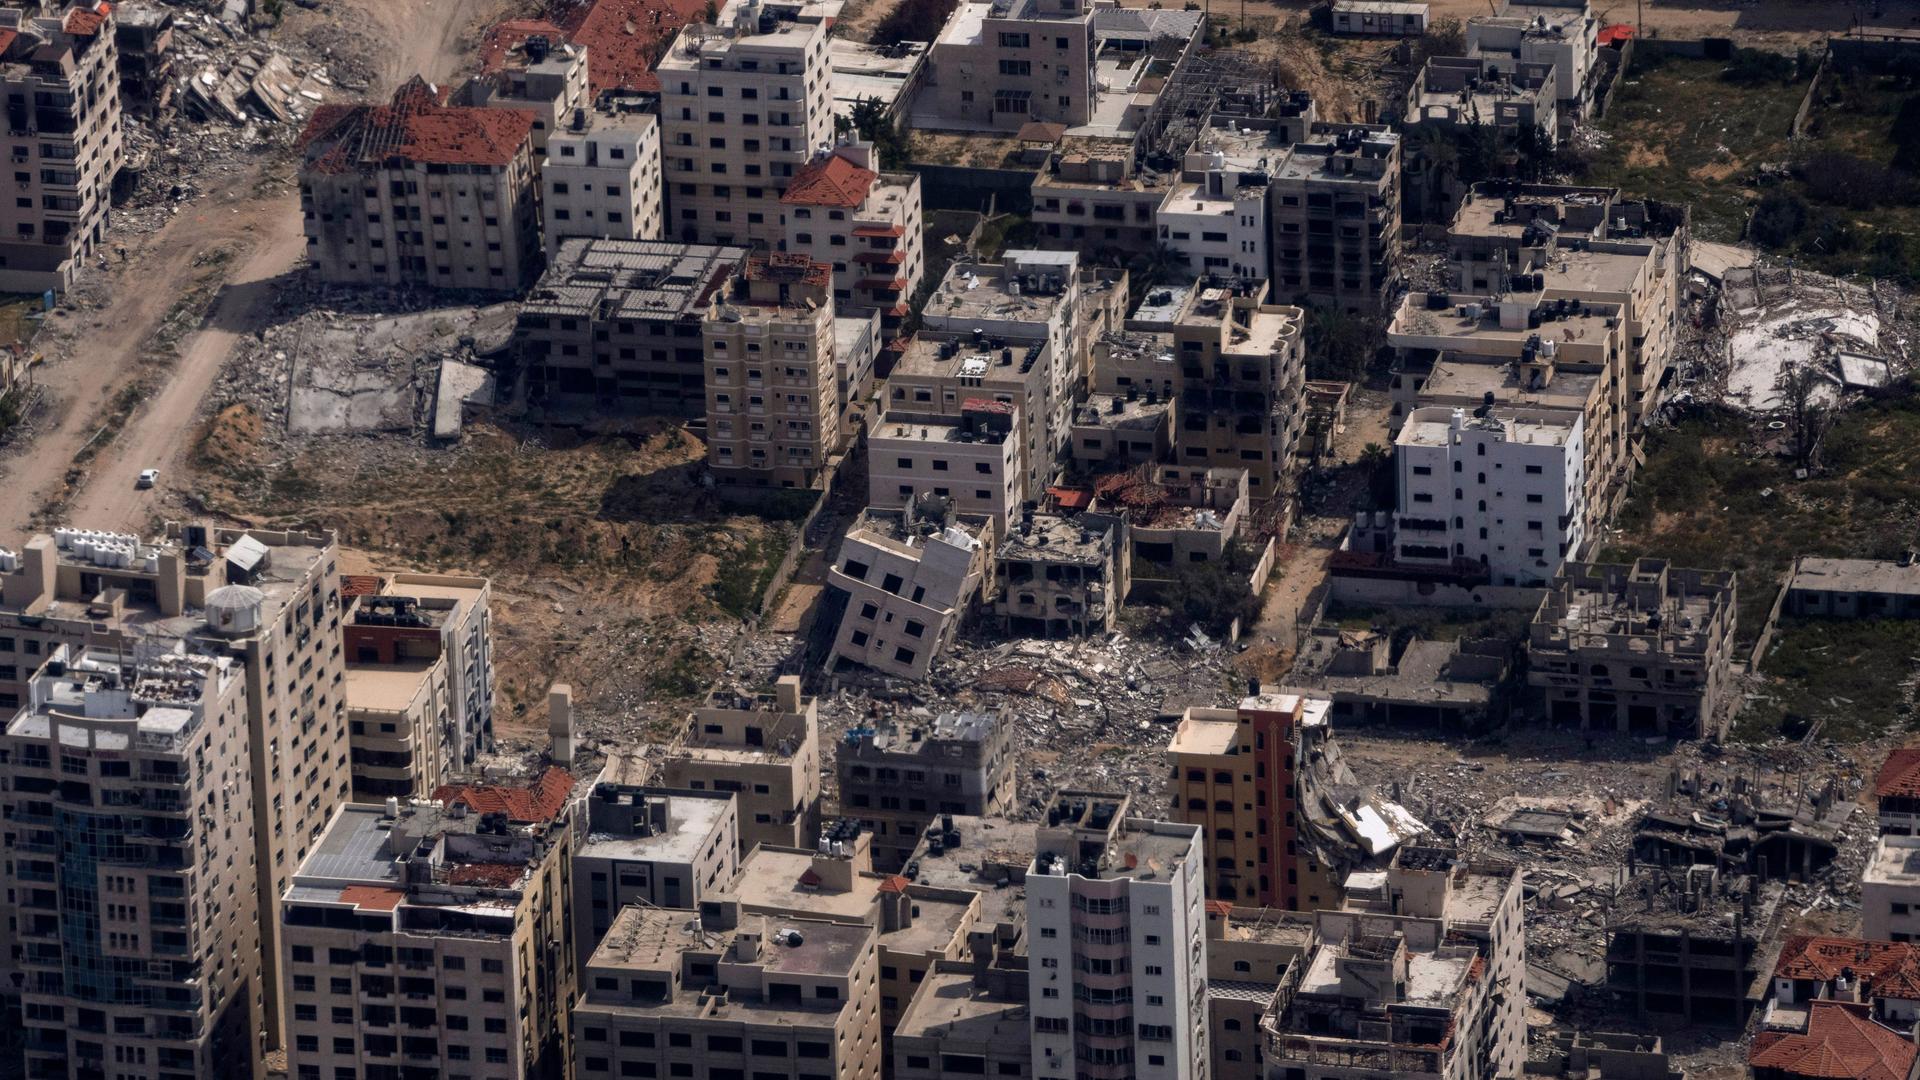 Blick auf viele zerstörte Gebäude in Gaza aus einem Flugzeugfenster heraus. 